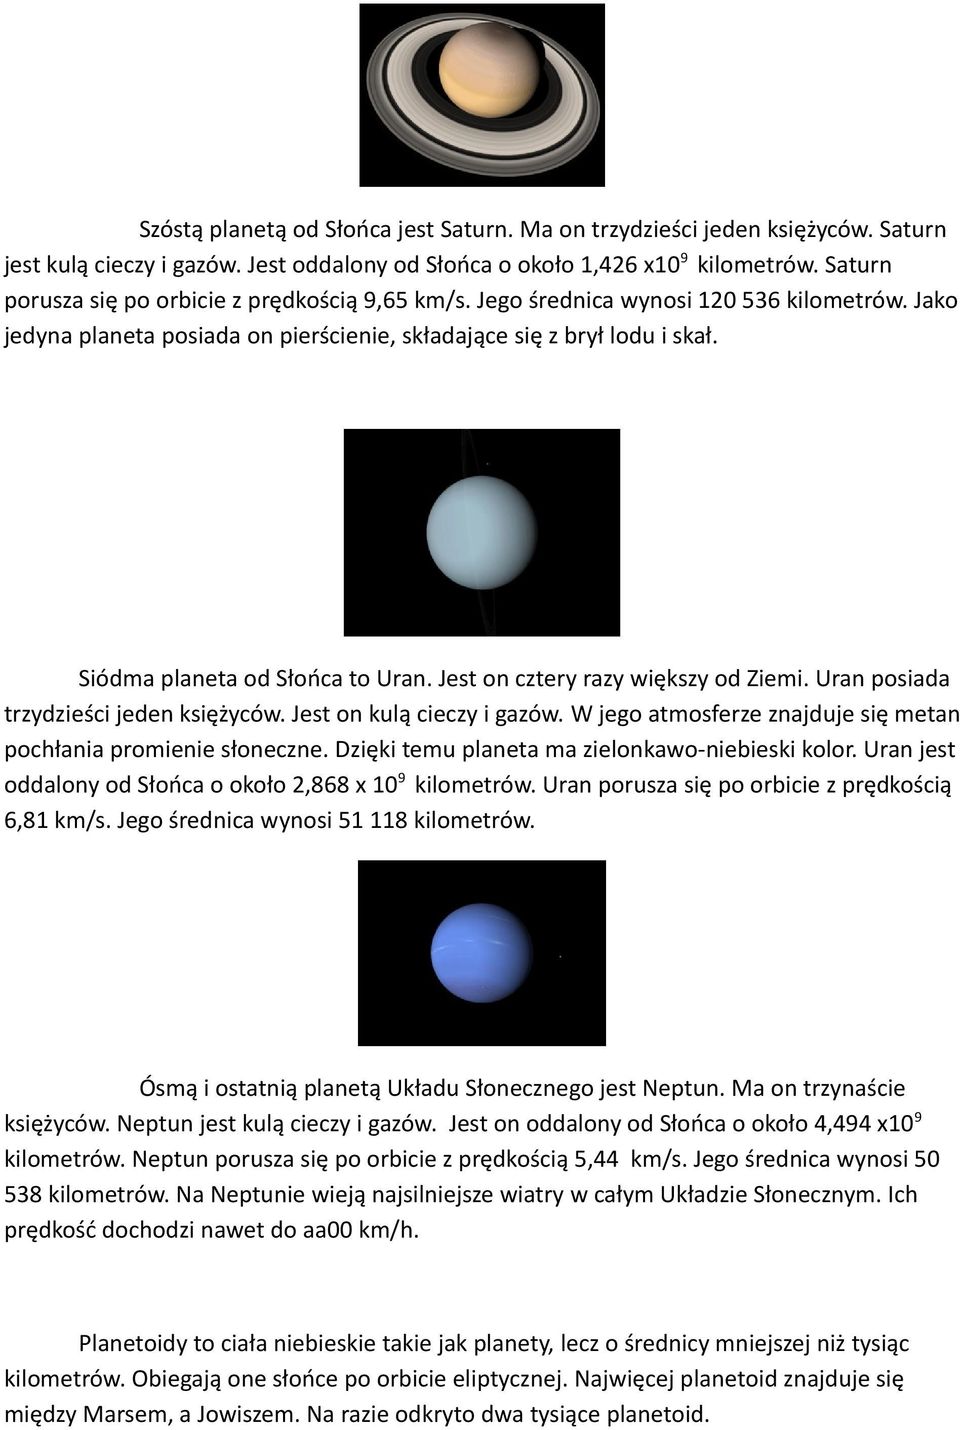 Siódma planeta od Słońca to Uran. Jest on cztery razy większy od Ziemi. Uran posiada trzydzieści jeden księżyców. Jest on kulą cieczy i gazów.